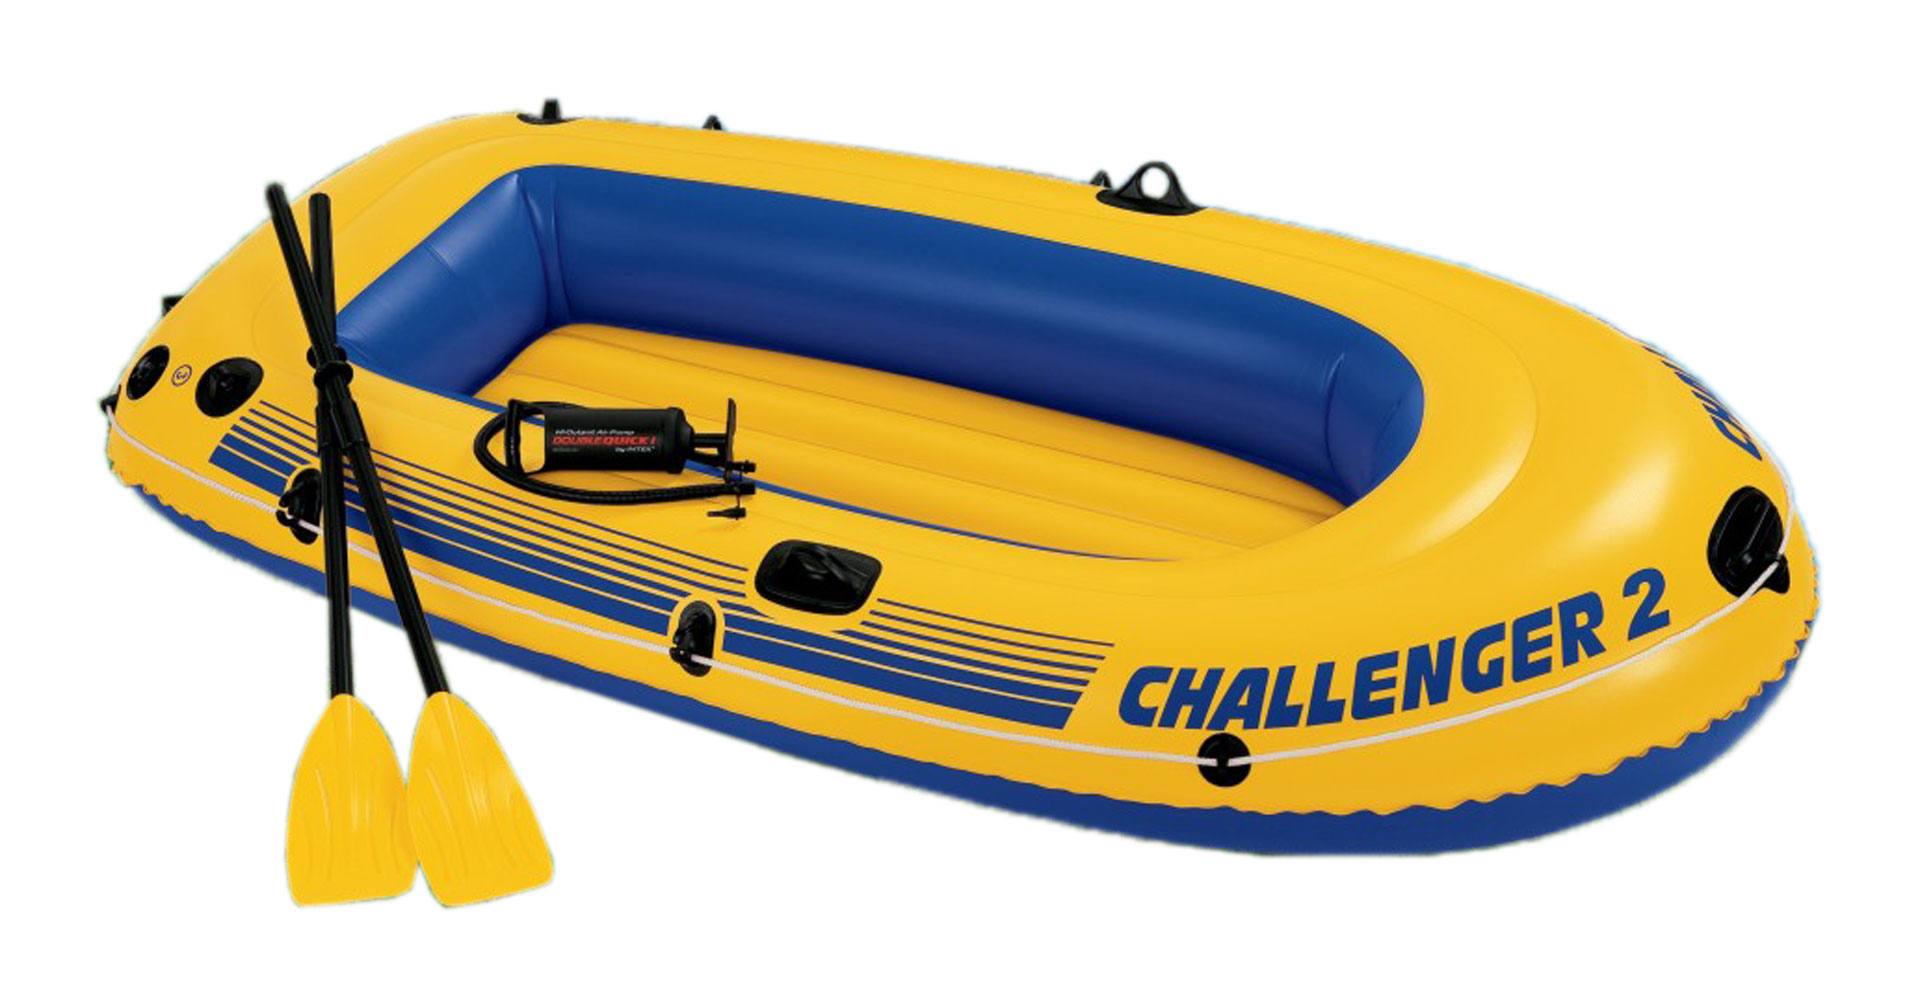 Challenger 2 Boat Set Size: 236*114*41 cm (LxWxH)